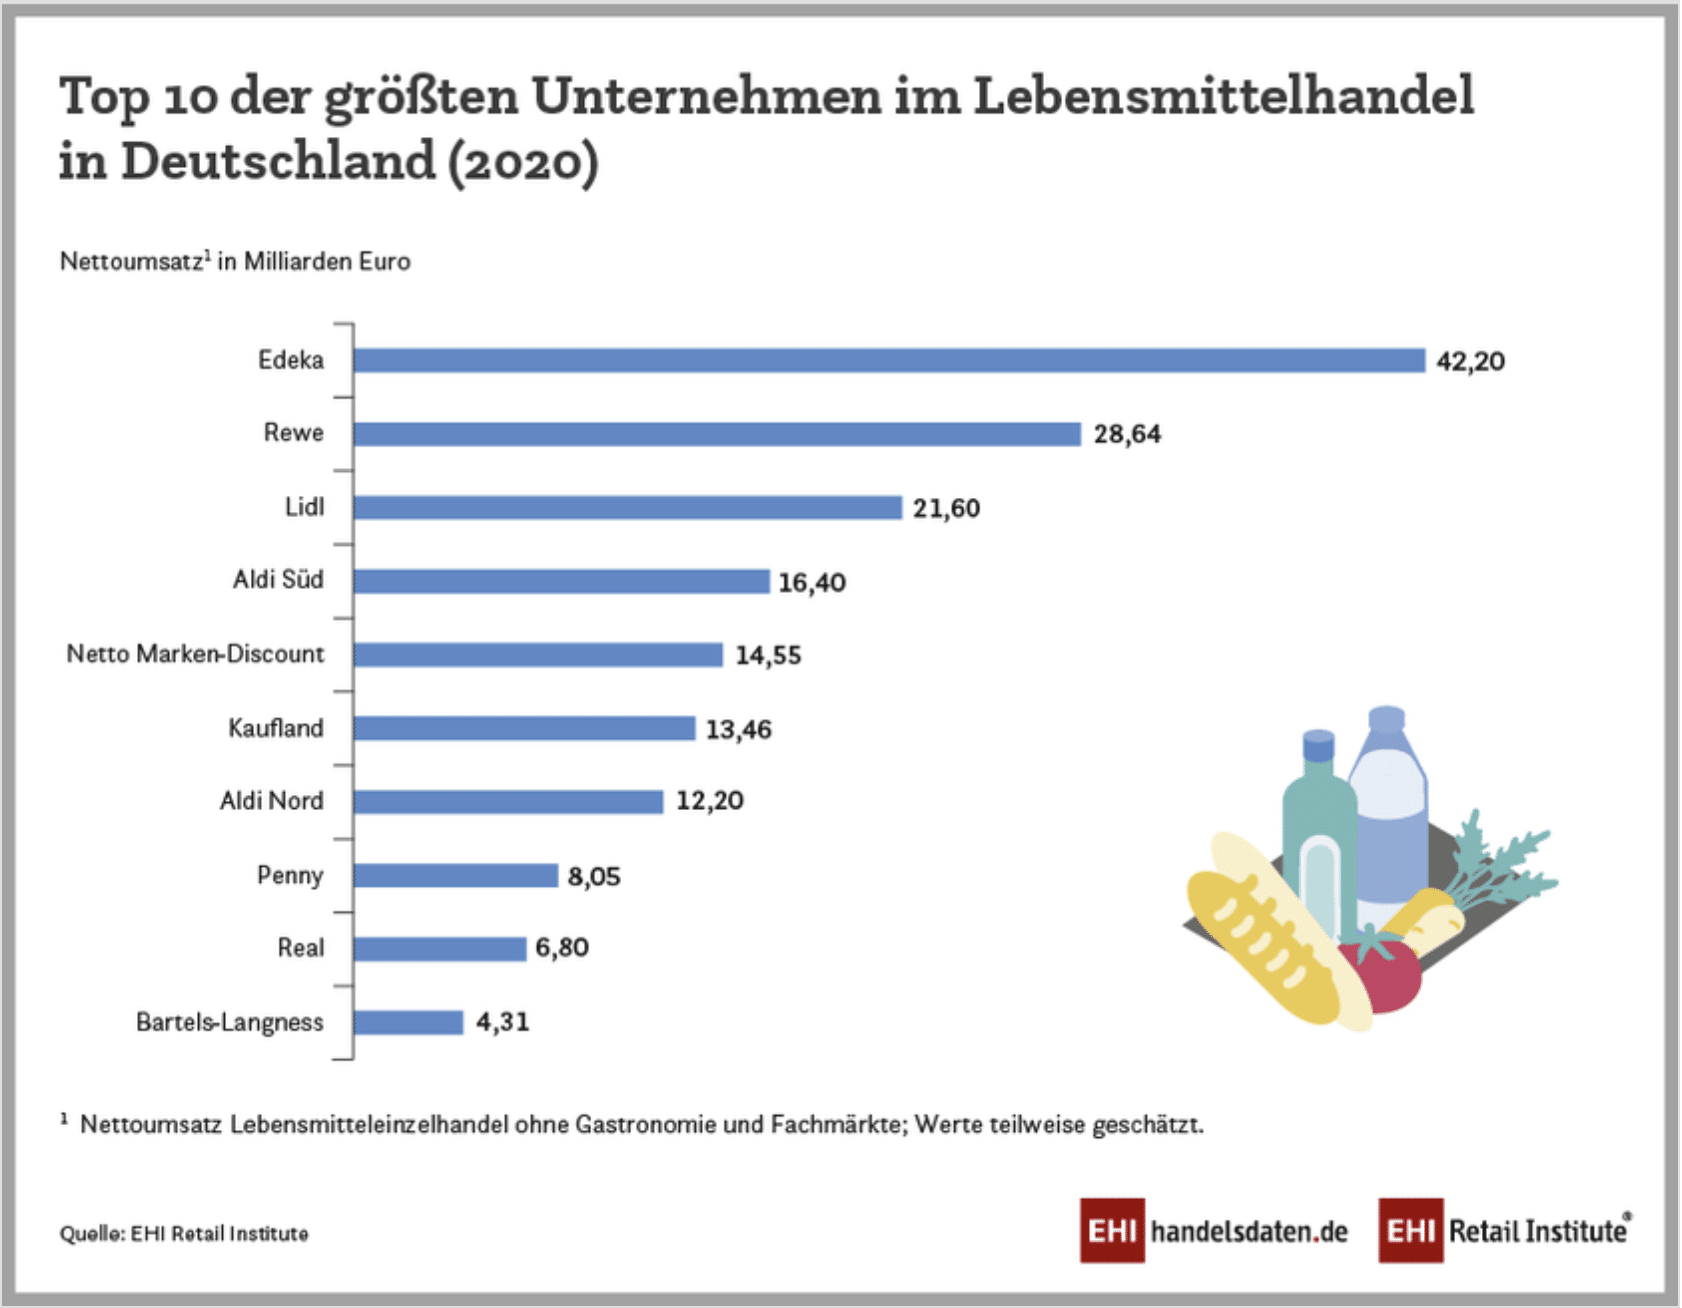 Top 10 der größten Unternehmen im Lebensmitteleinzelhandel in Deutschland (2020)